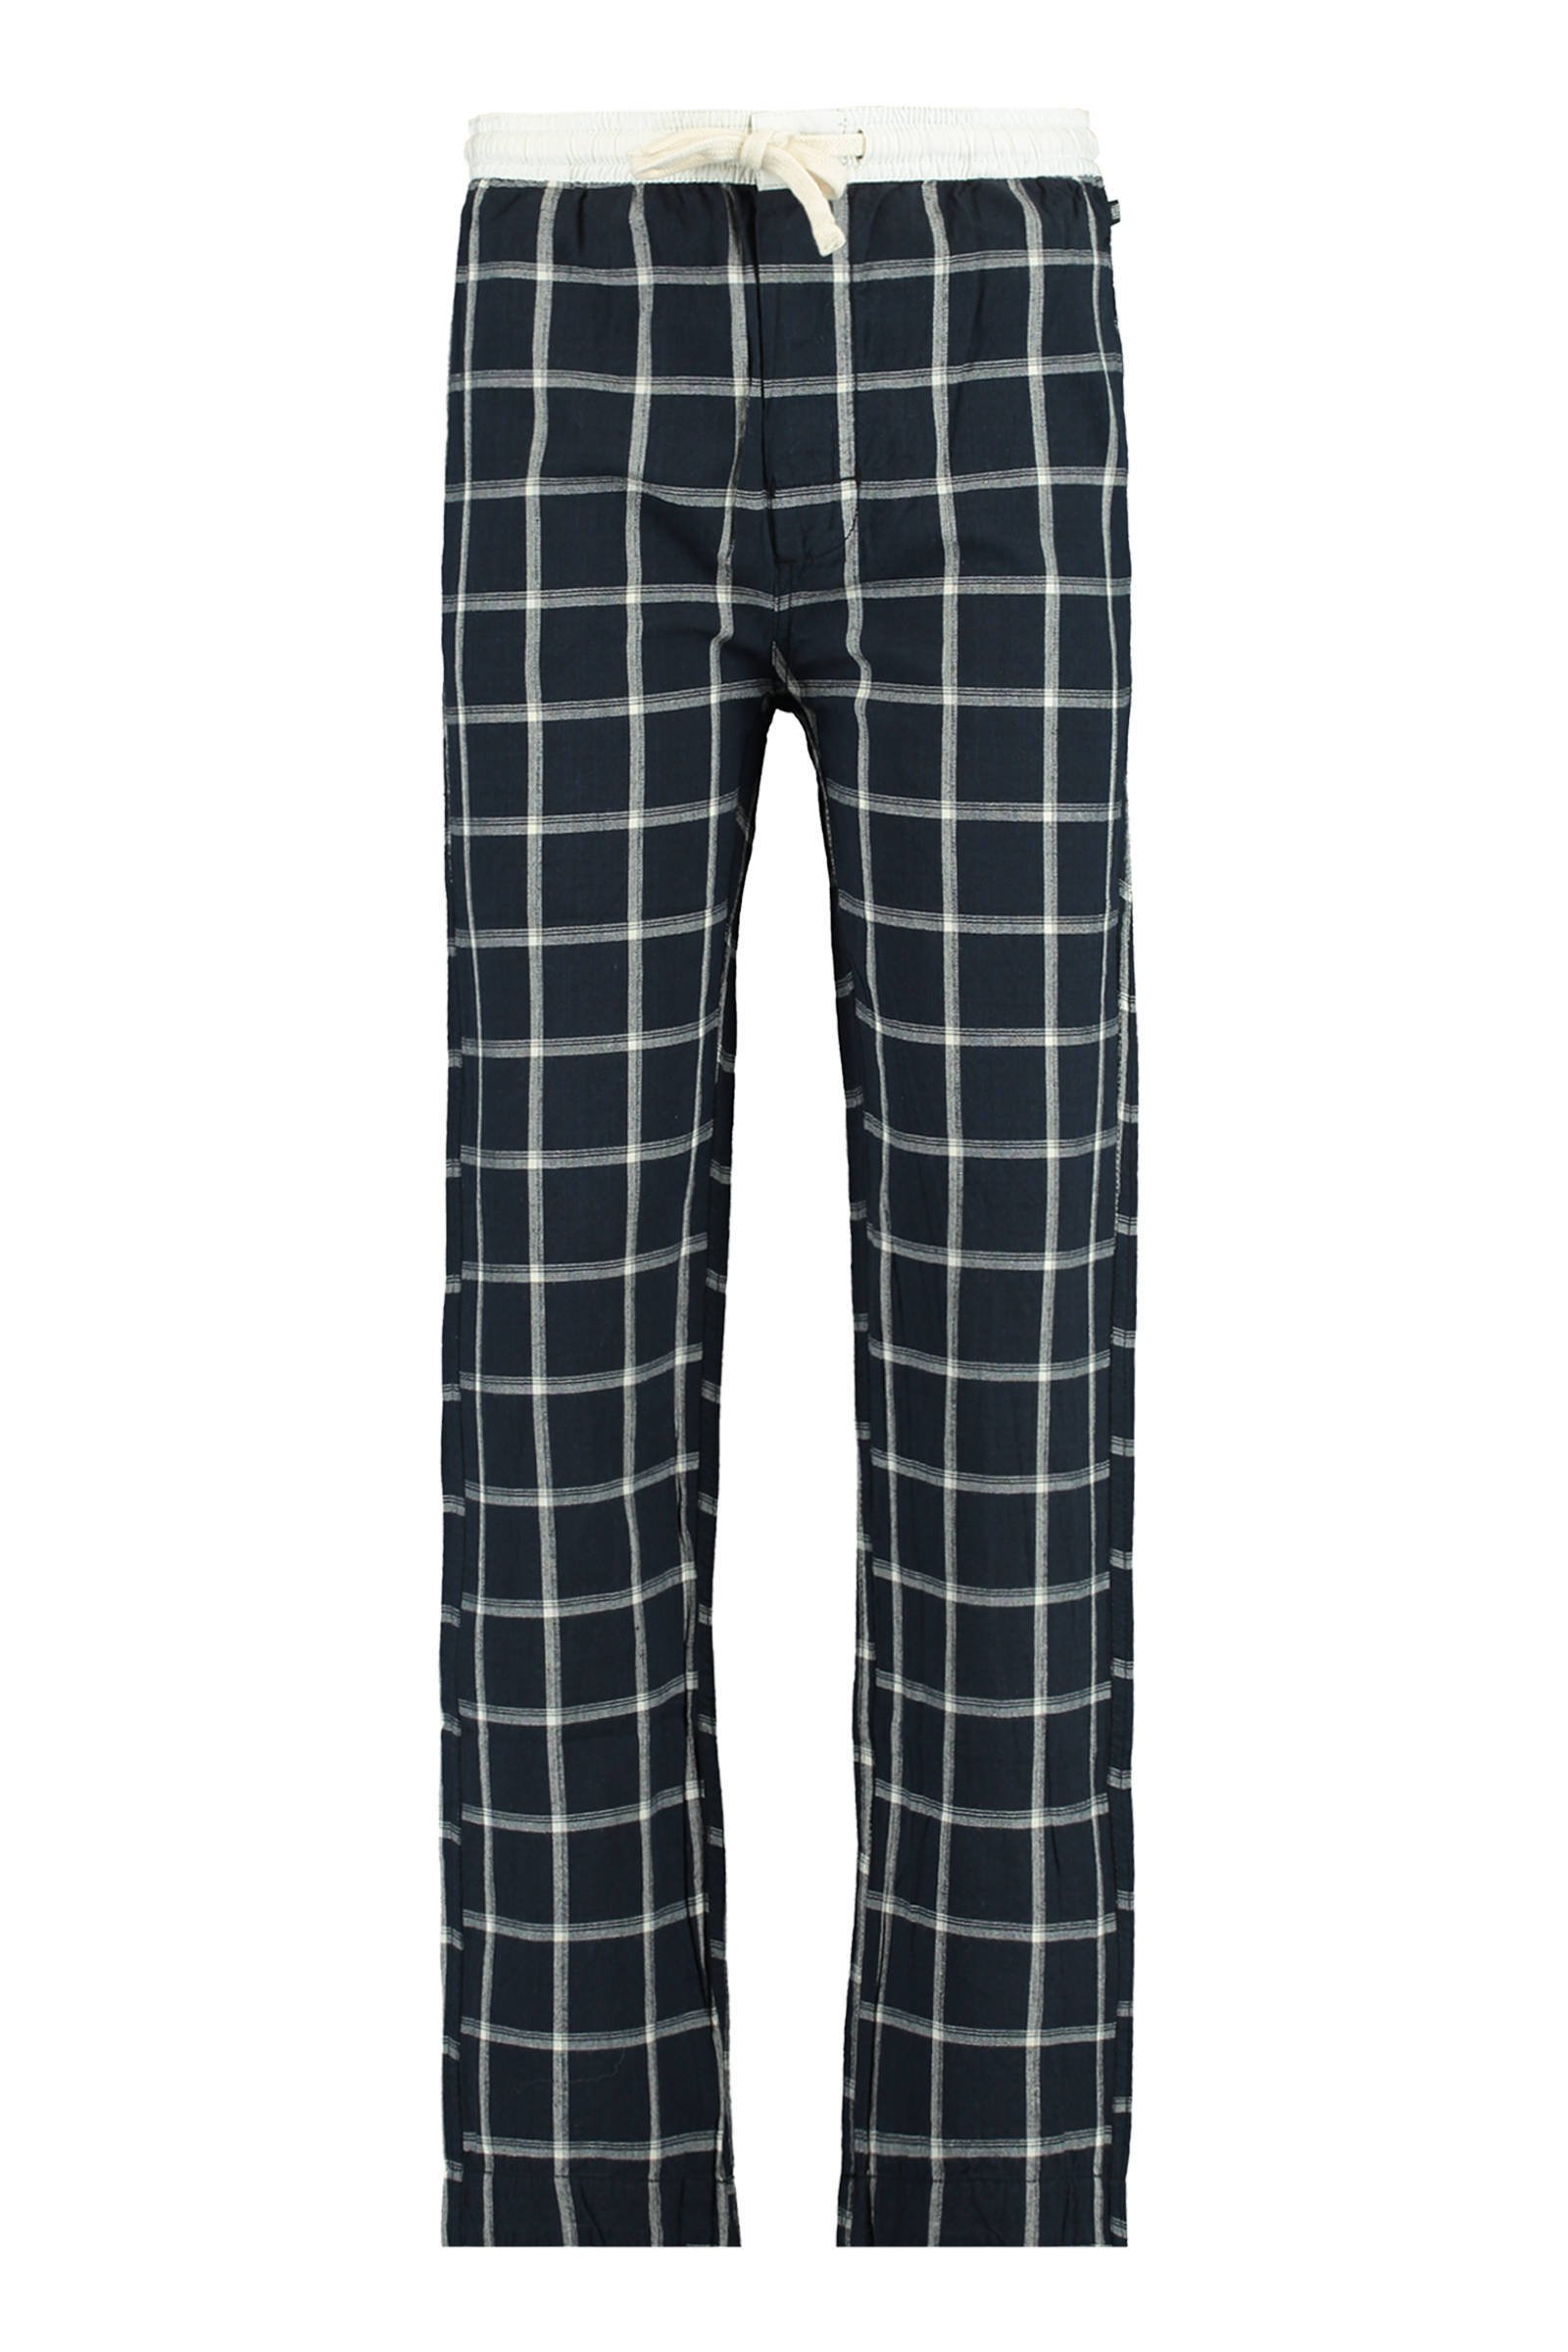 America Today Junior geruite regular fit pyjamabroek Lake donkerblauw/wit online kopen